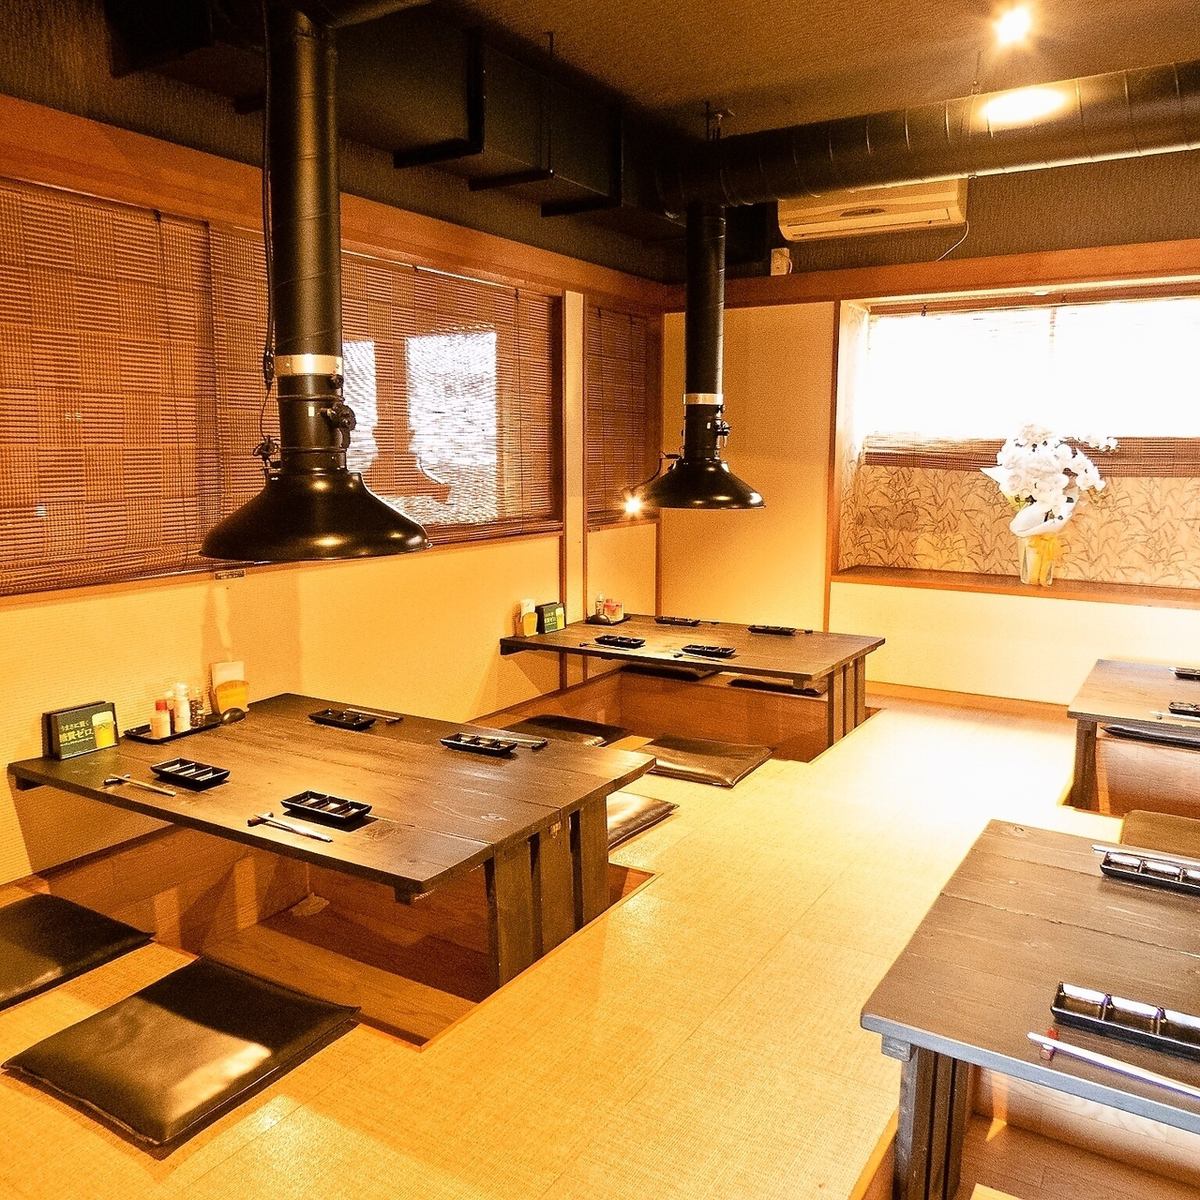 完整的私人房間。日式房間可供10至16人預訂。